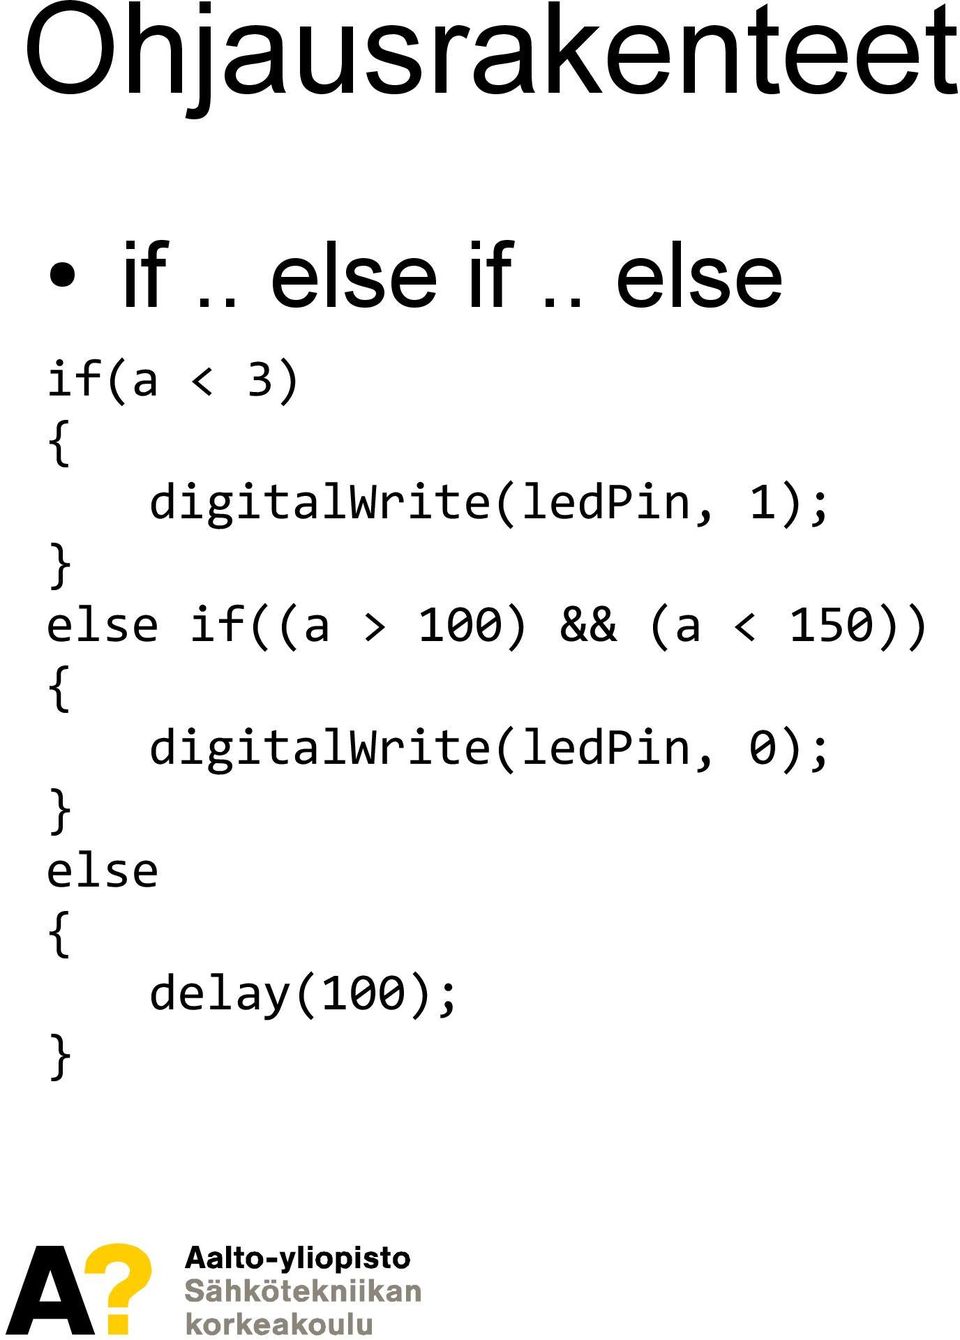 digitalwrite(ledpin, 1); else if((a